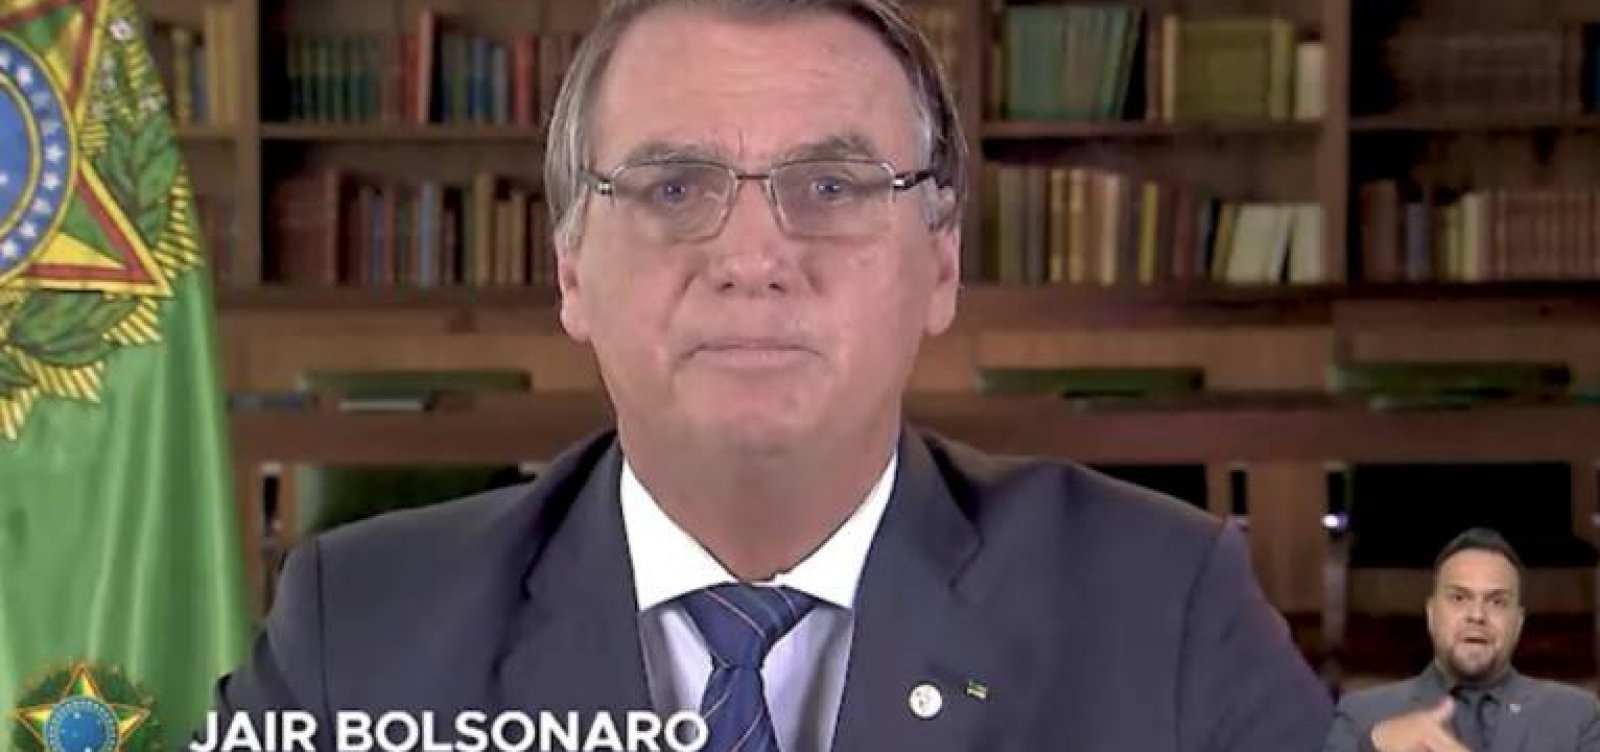 Na TV, Bolsonaro distorce dados, omite fatos e é alvo de panelaço 